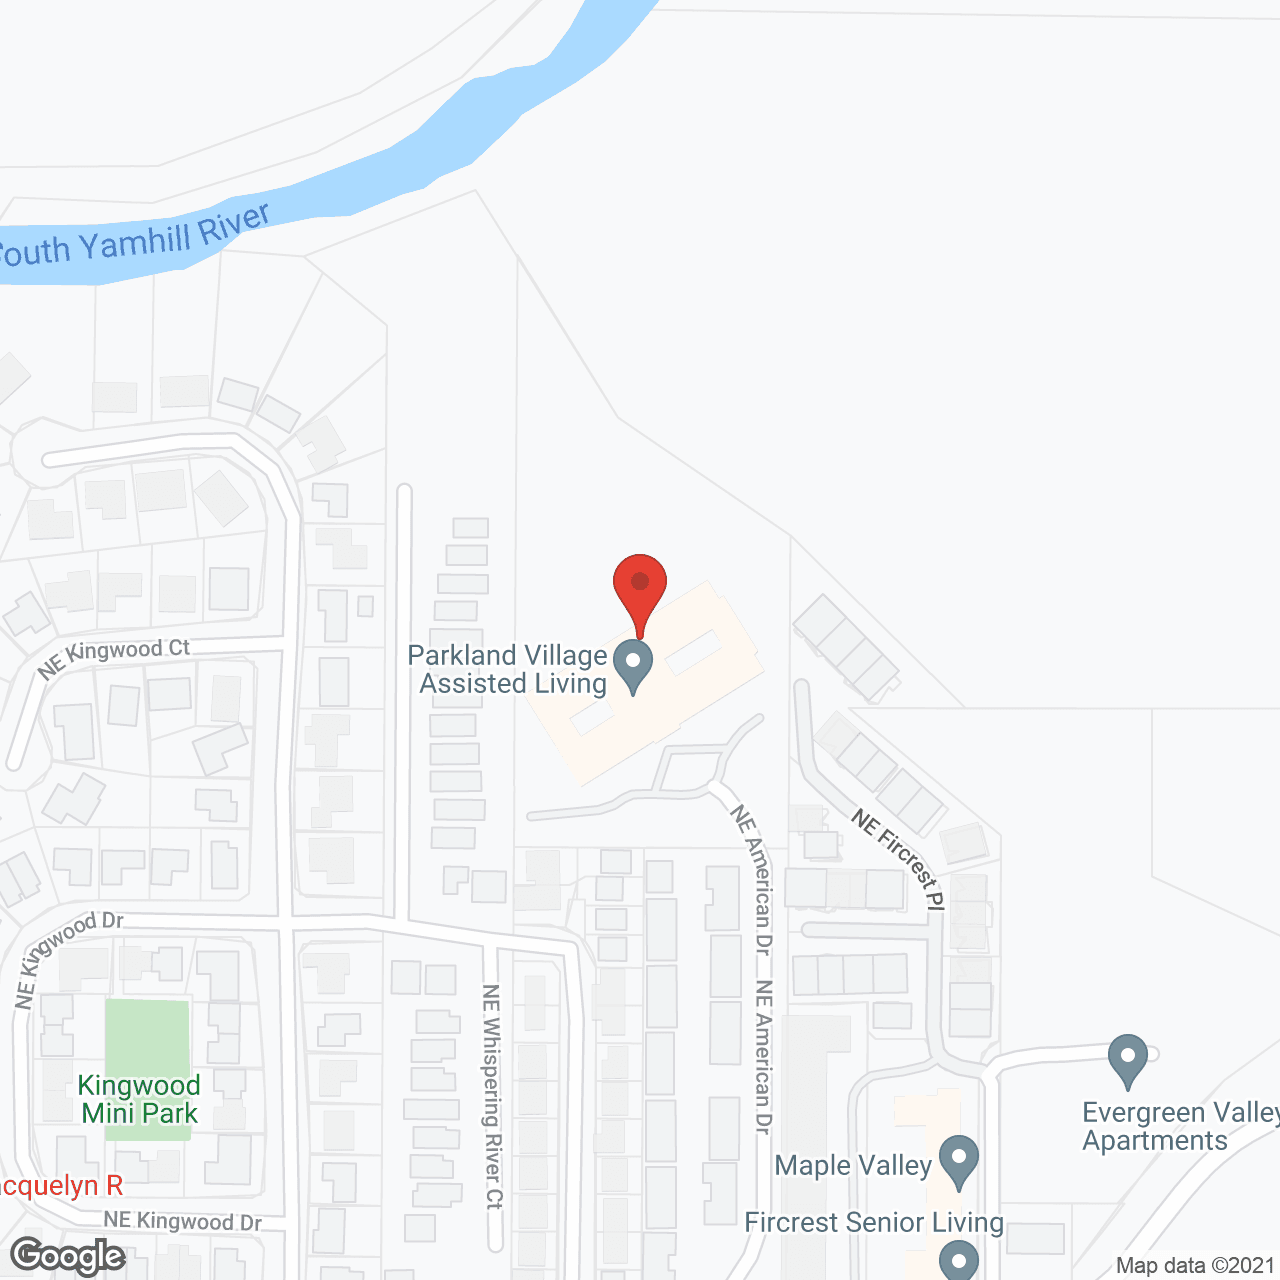 Parkland Village in google map